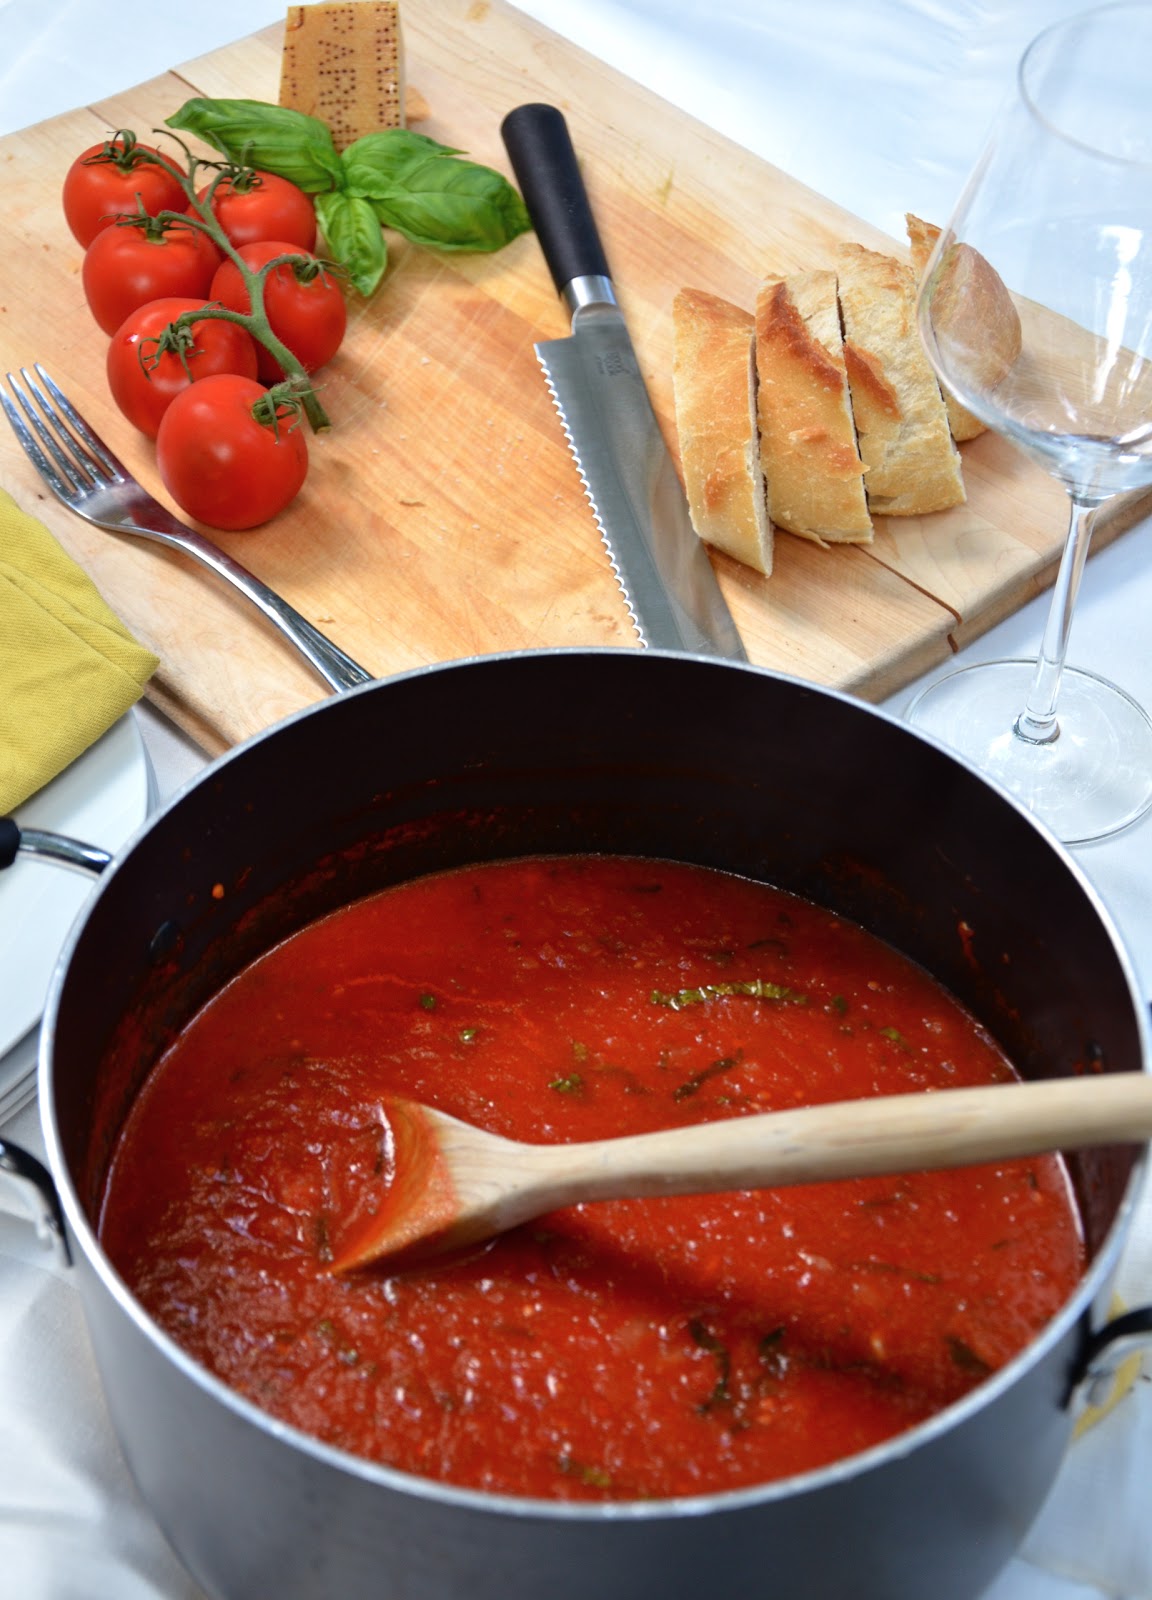 carlyklock: Authentic Italian Tomato Sauce